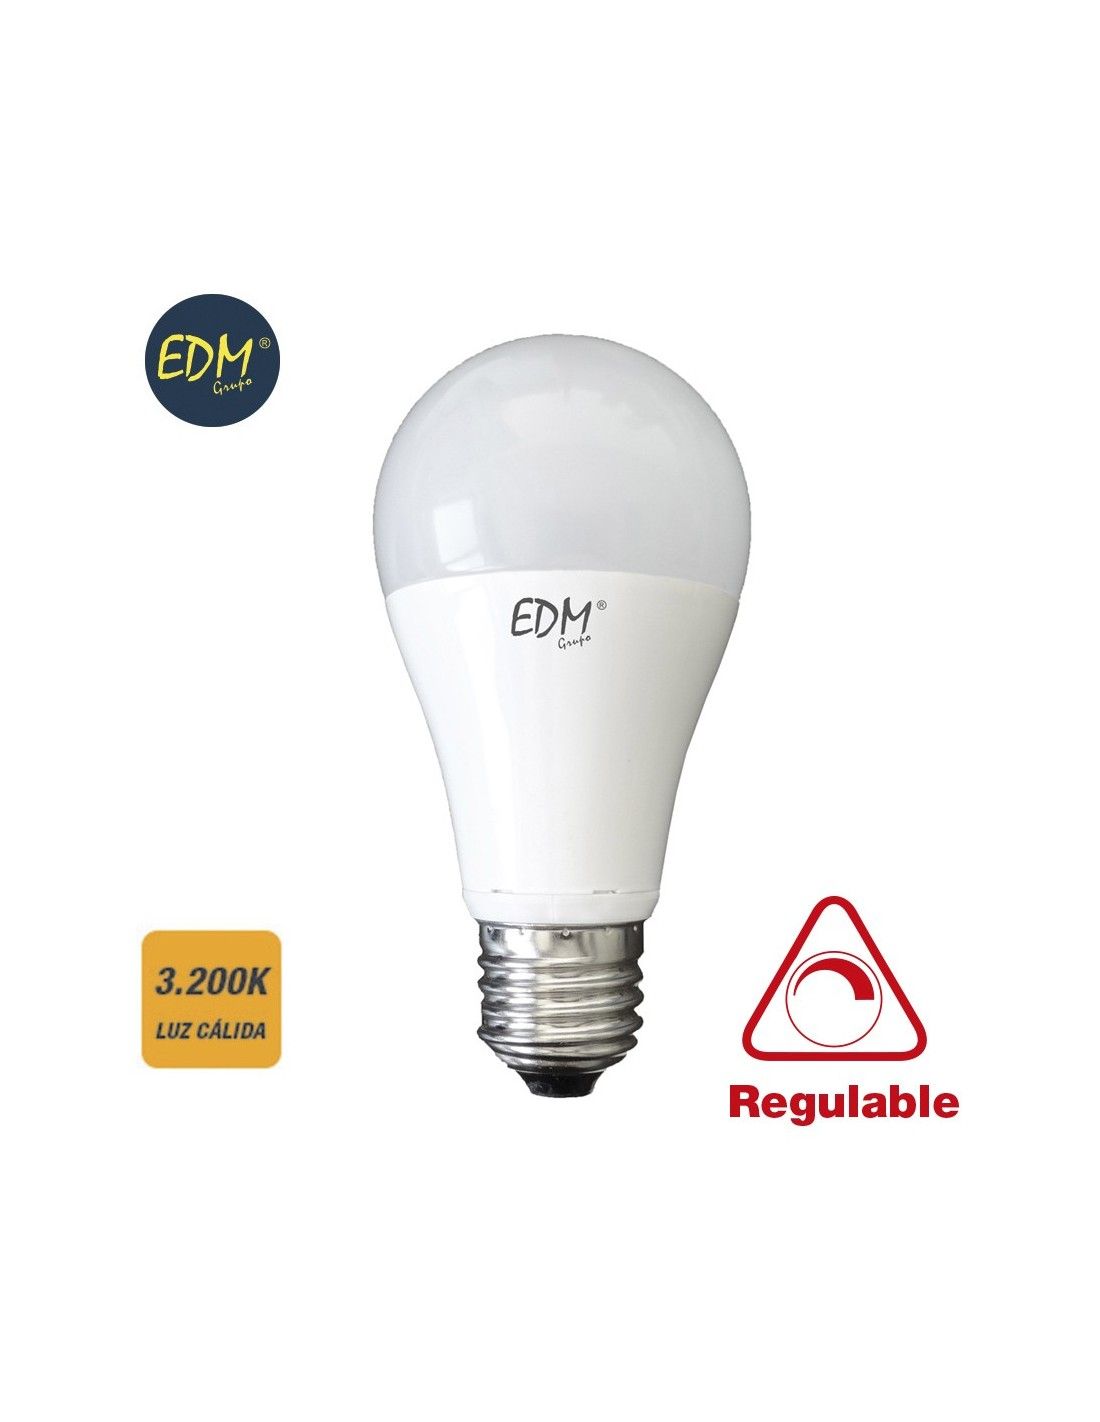 Ampoule led standard 10w 810 lumens E27 3200k lumière chaude EDM 98941